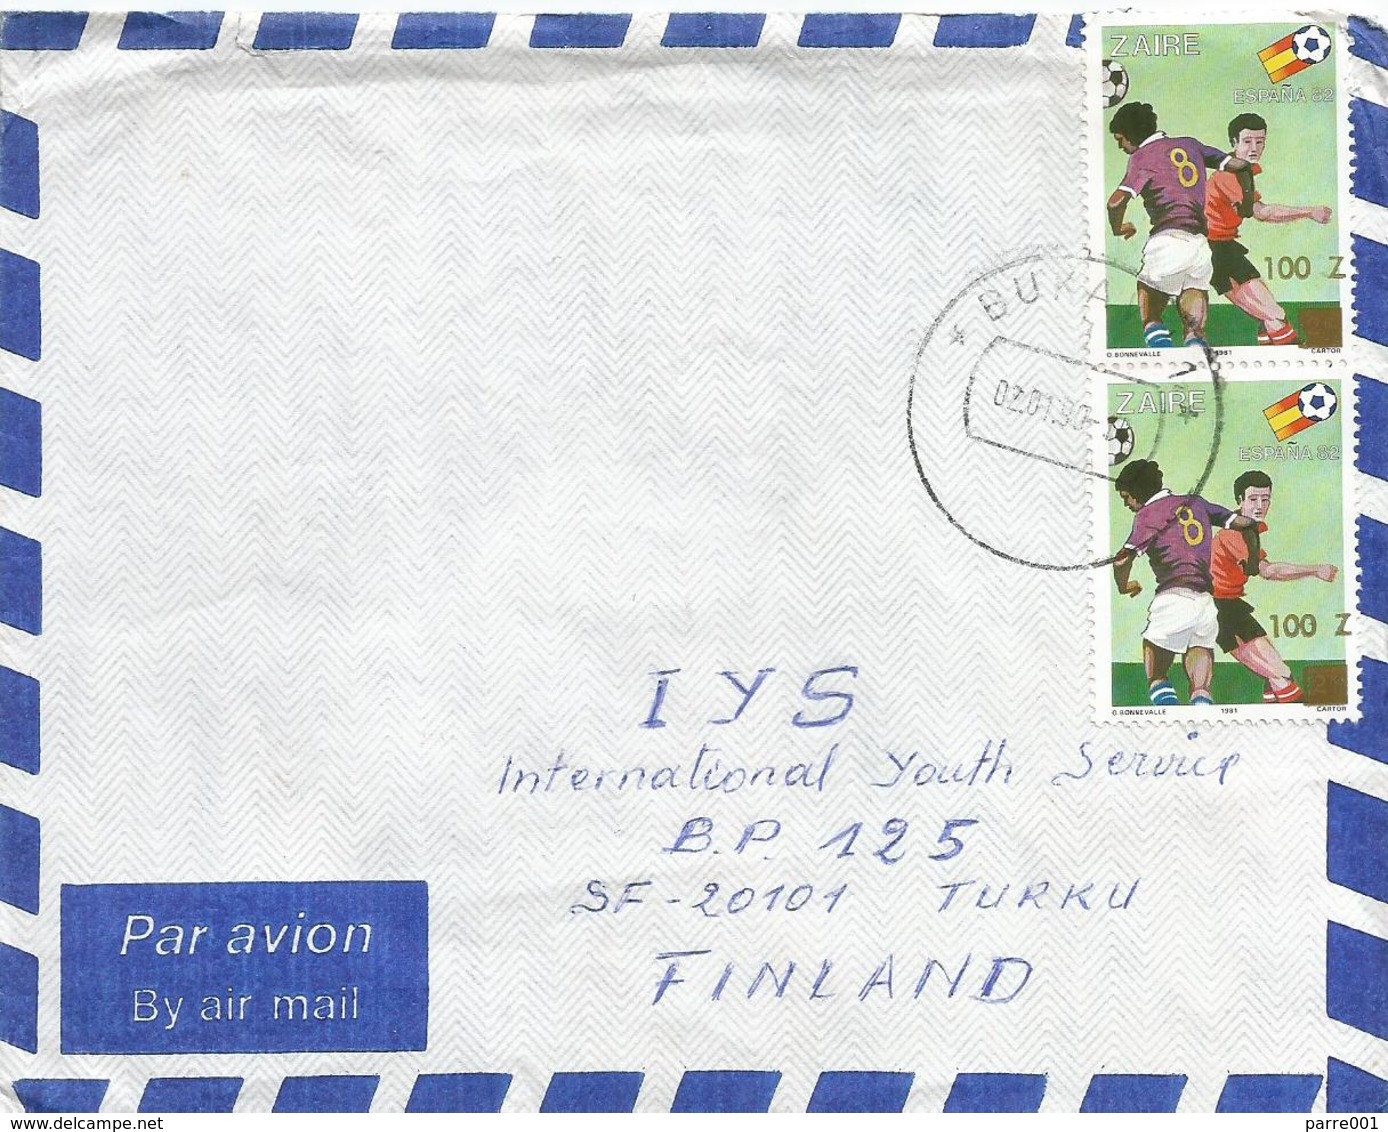 DRC RDC Zaire Congo 1990 Bukavu World Cup Football Spain 100Z On 25k Michel 1010 Cover - Oblitérés